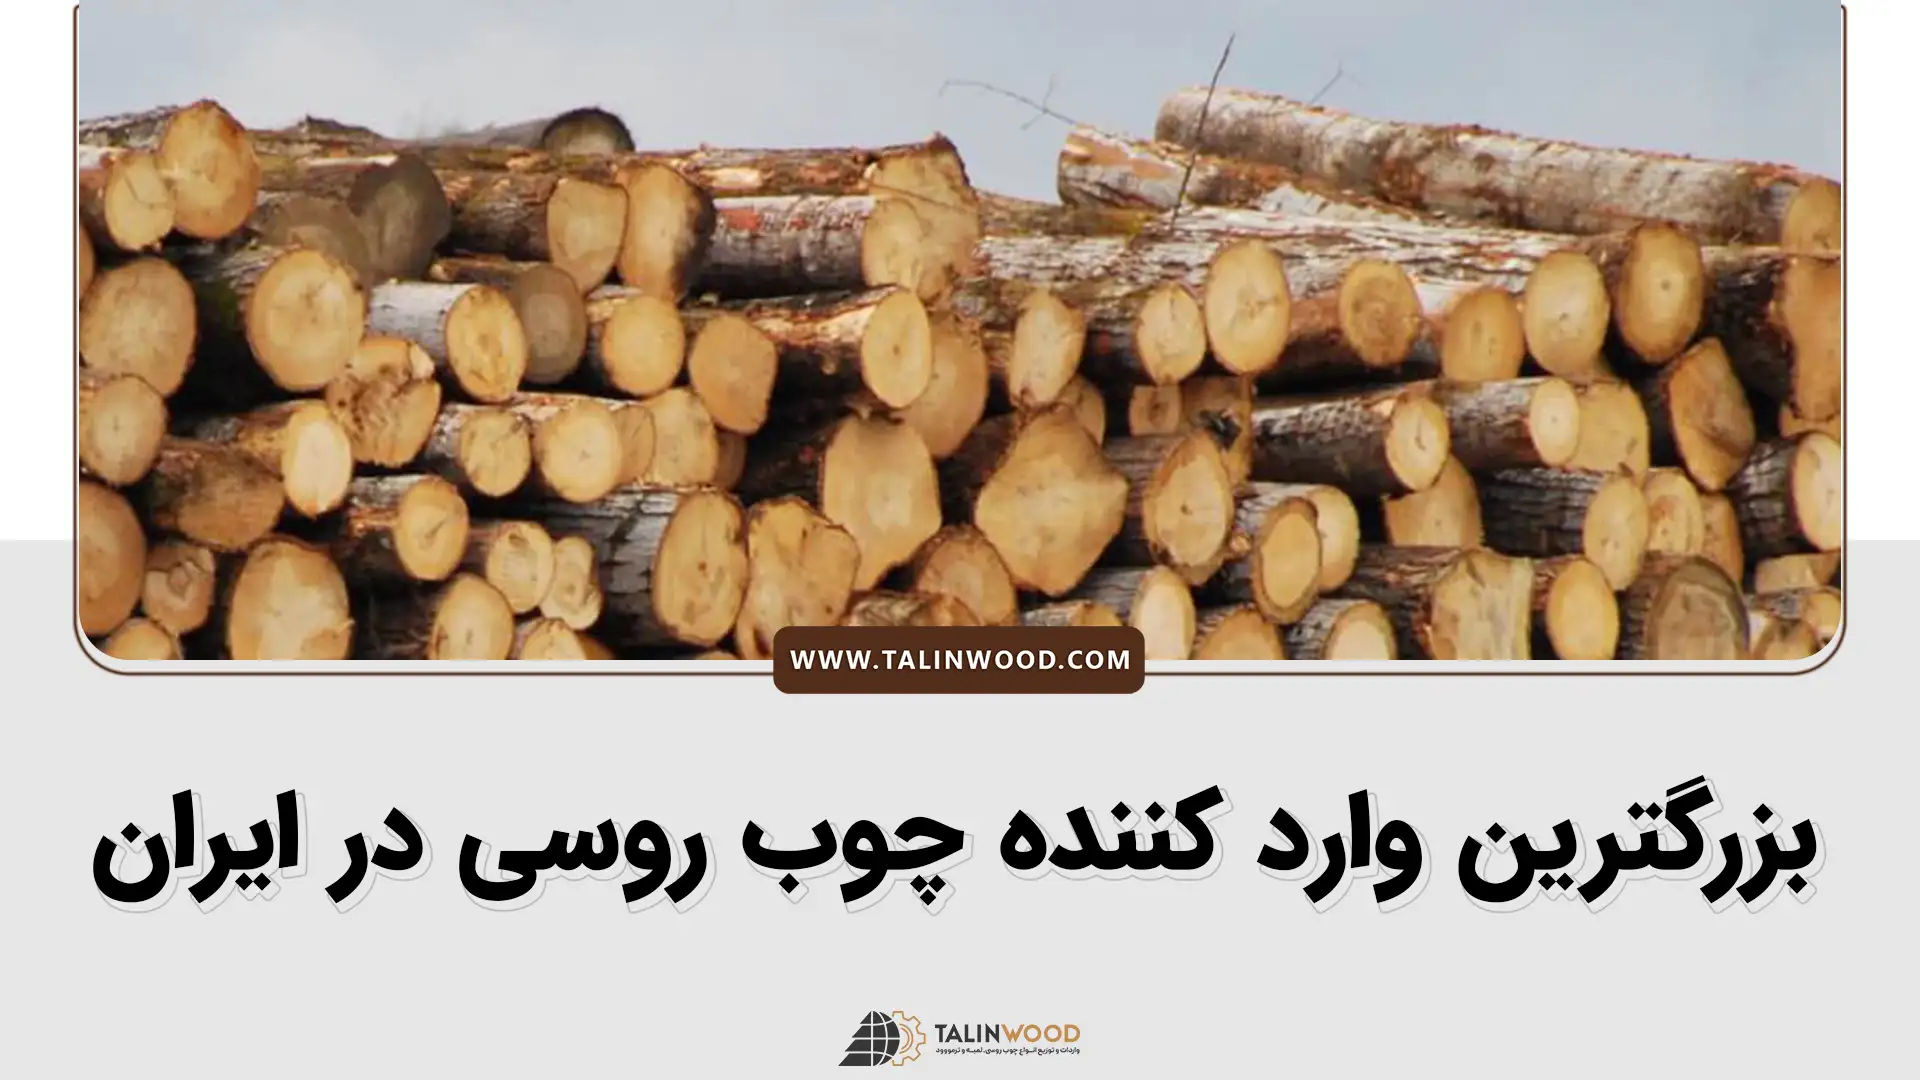 بزرگترین وارد کننده چوب روسی در ایران